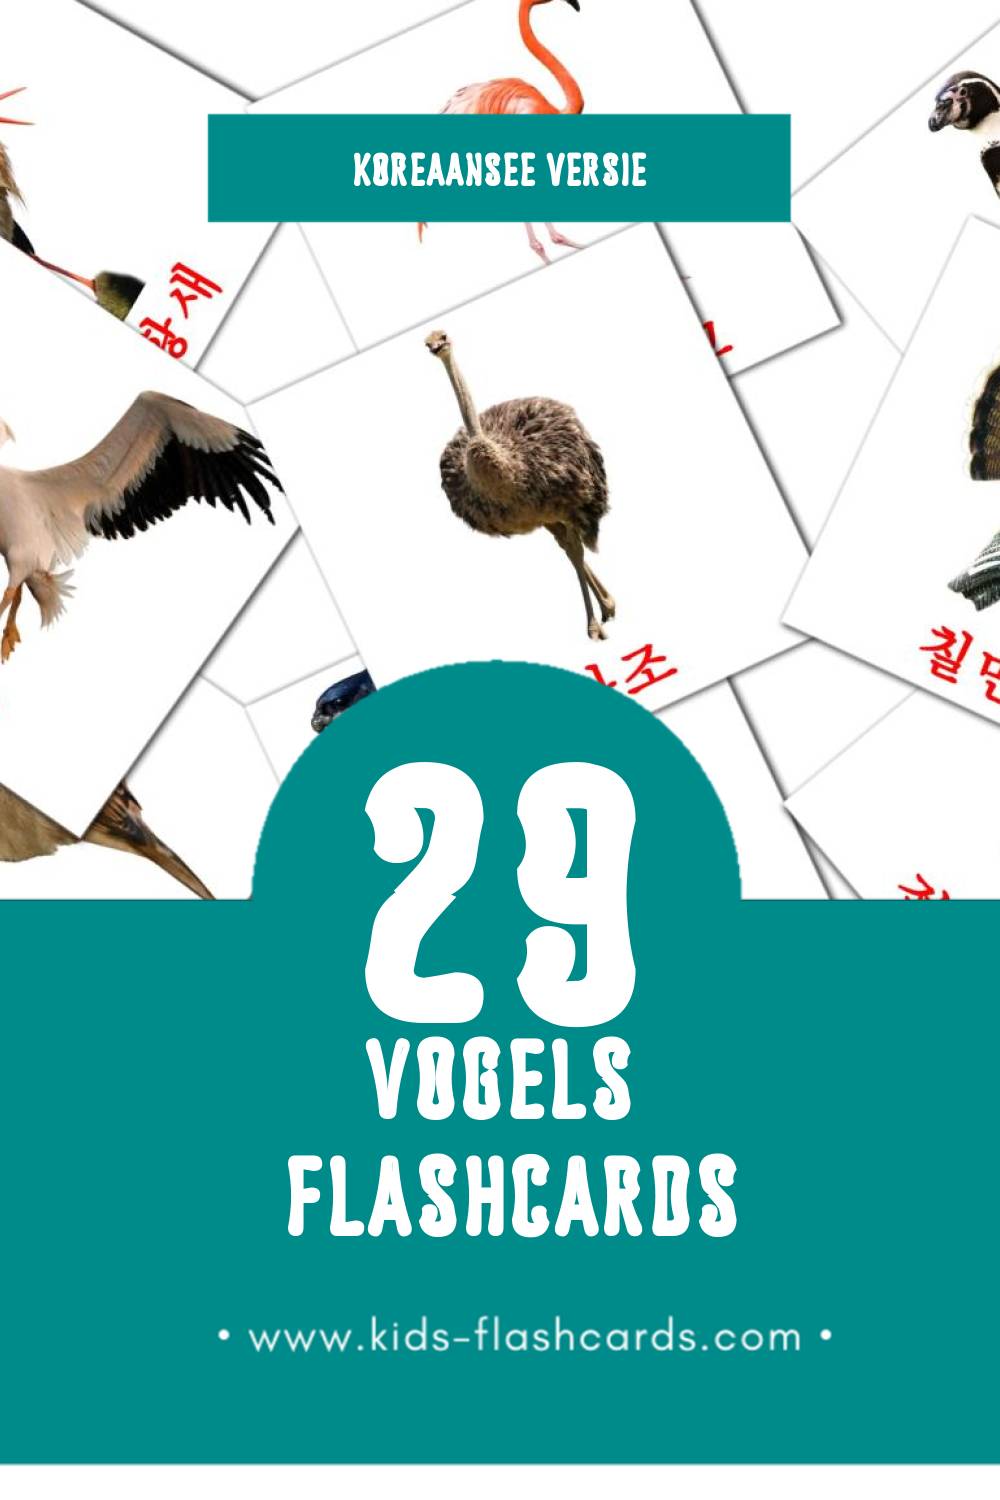 Visuele 조류 Flashcards voor Kleuters (29 kaarten in het Koreaanse)